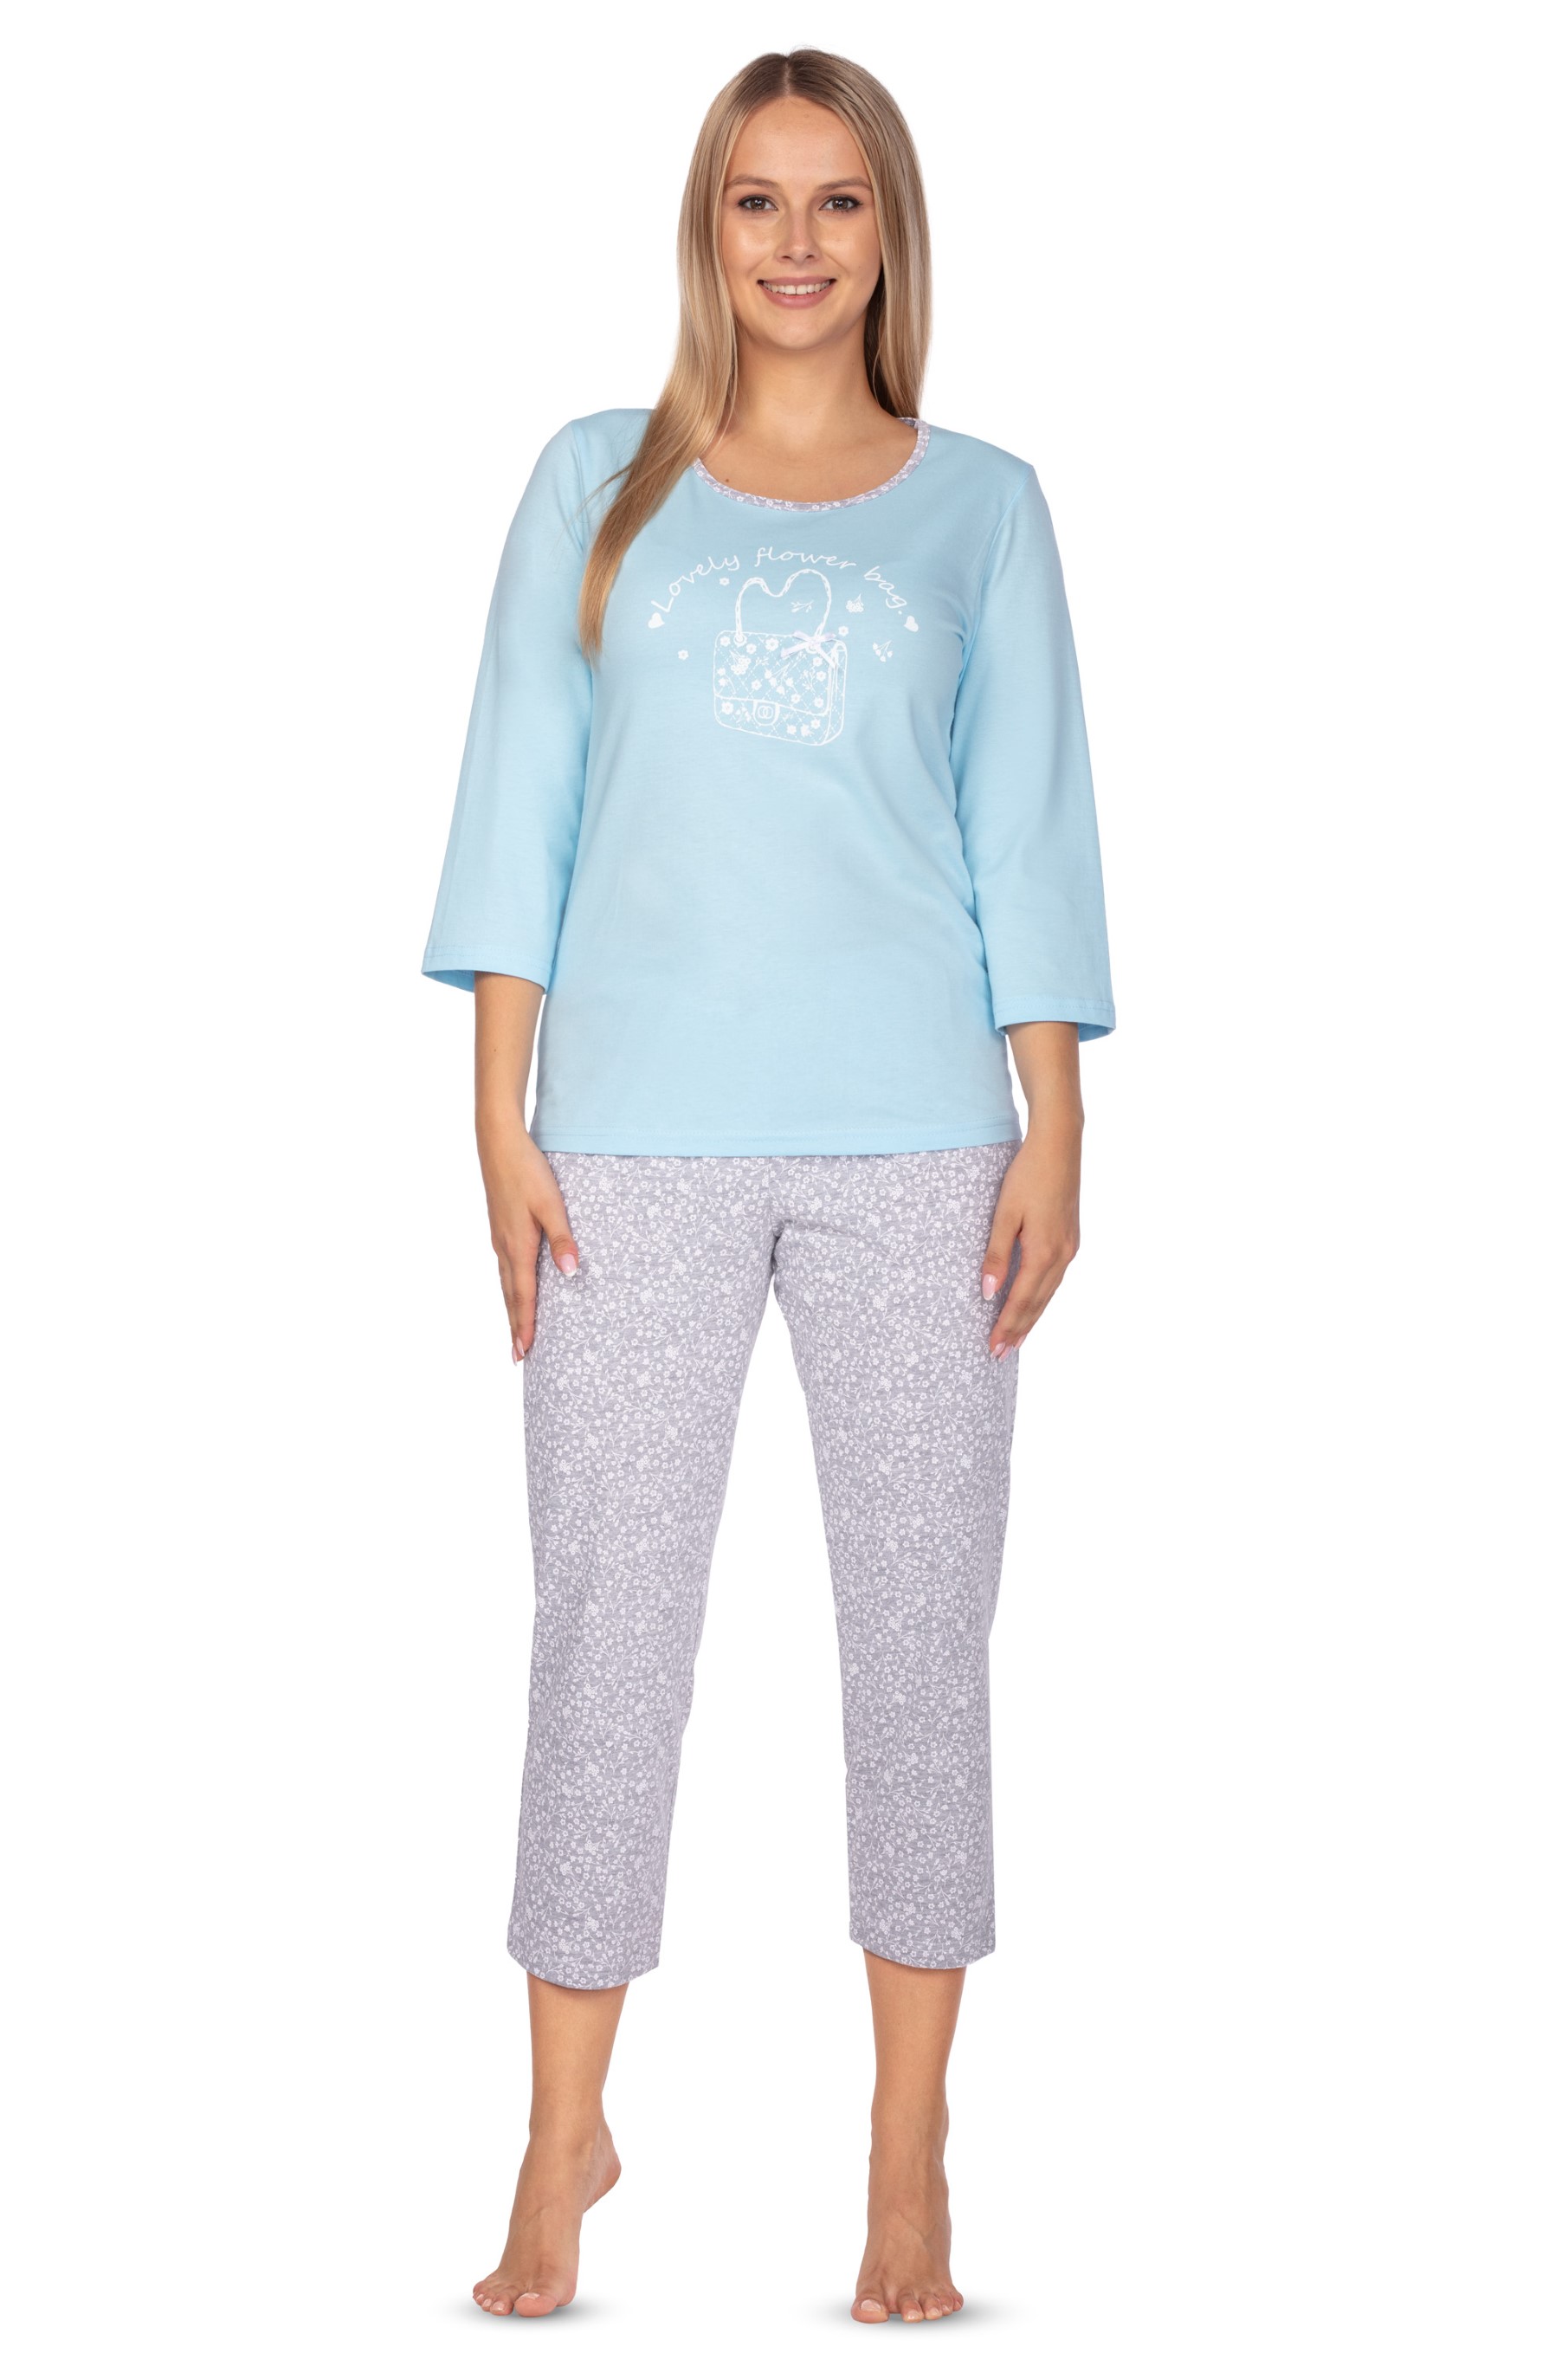 Regina 638 modré 3/4 dámské pyžamo Barva: modrá, Velikost: XL